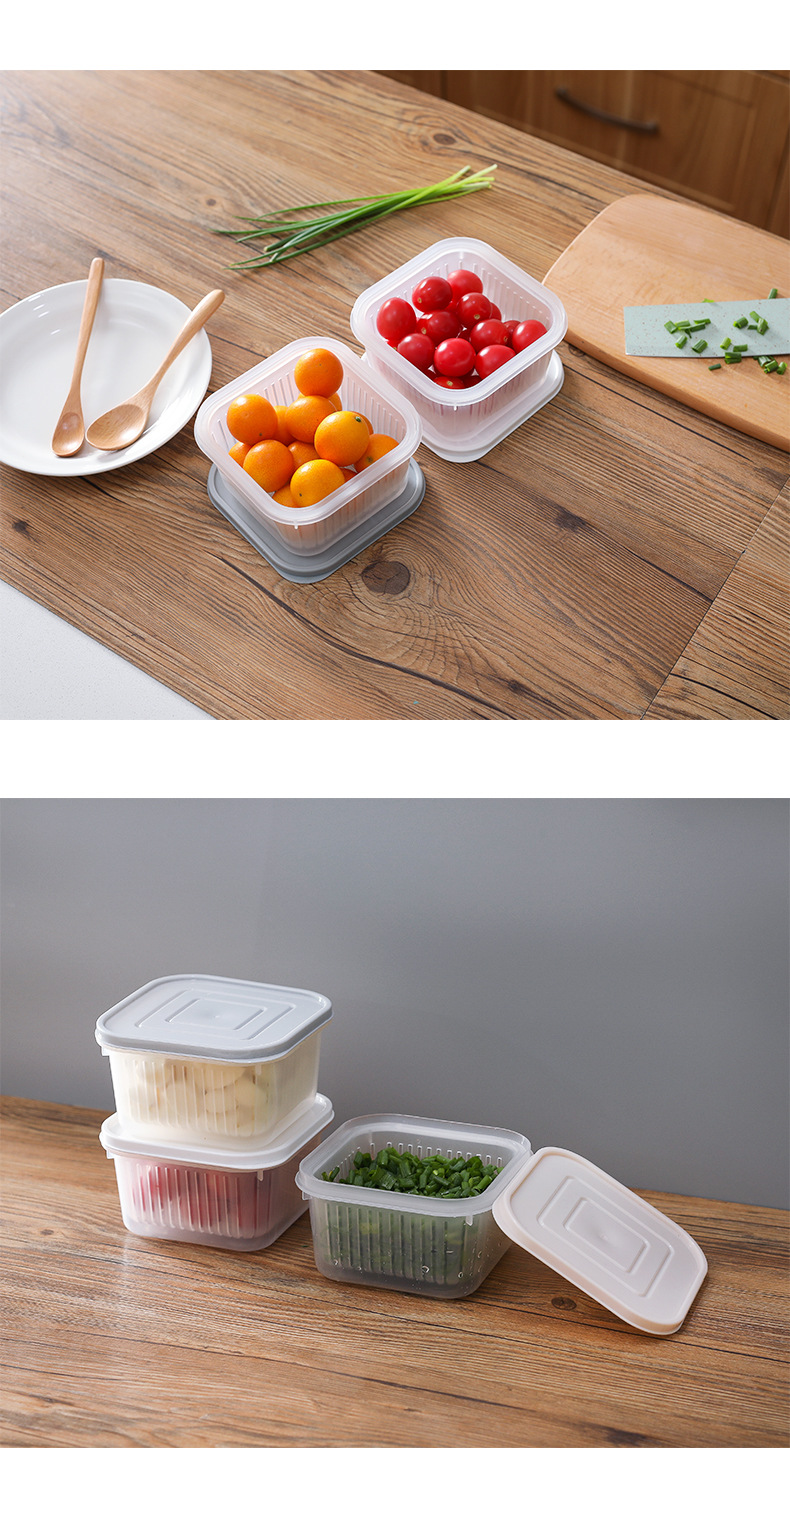 創意廚房雙層瀝水保鮮盒 廚房蔬果保鮮收納盒 冰箱食物保鮮盒